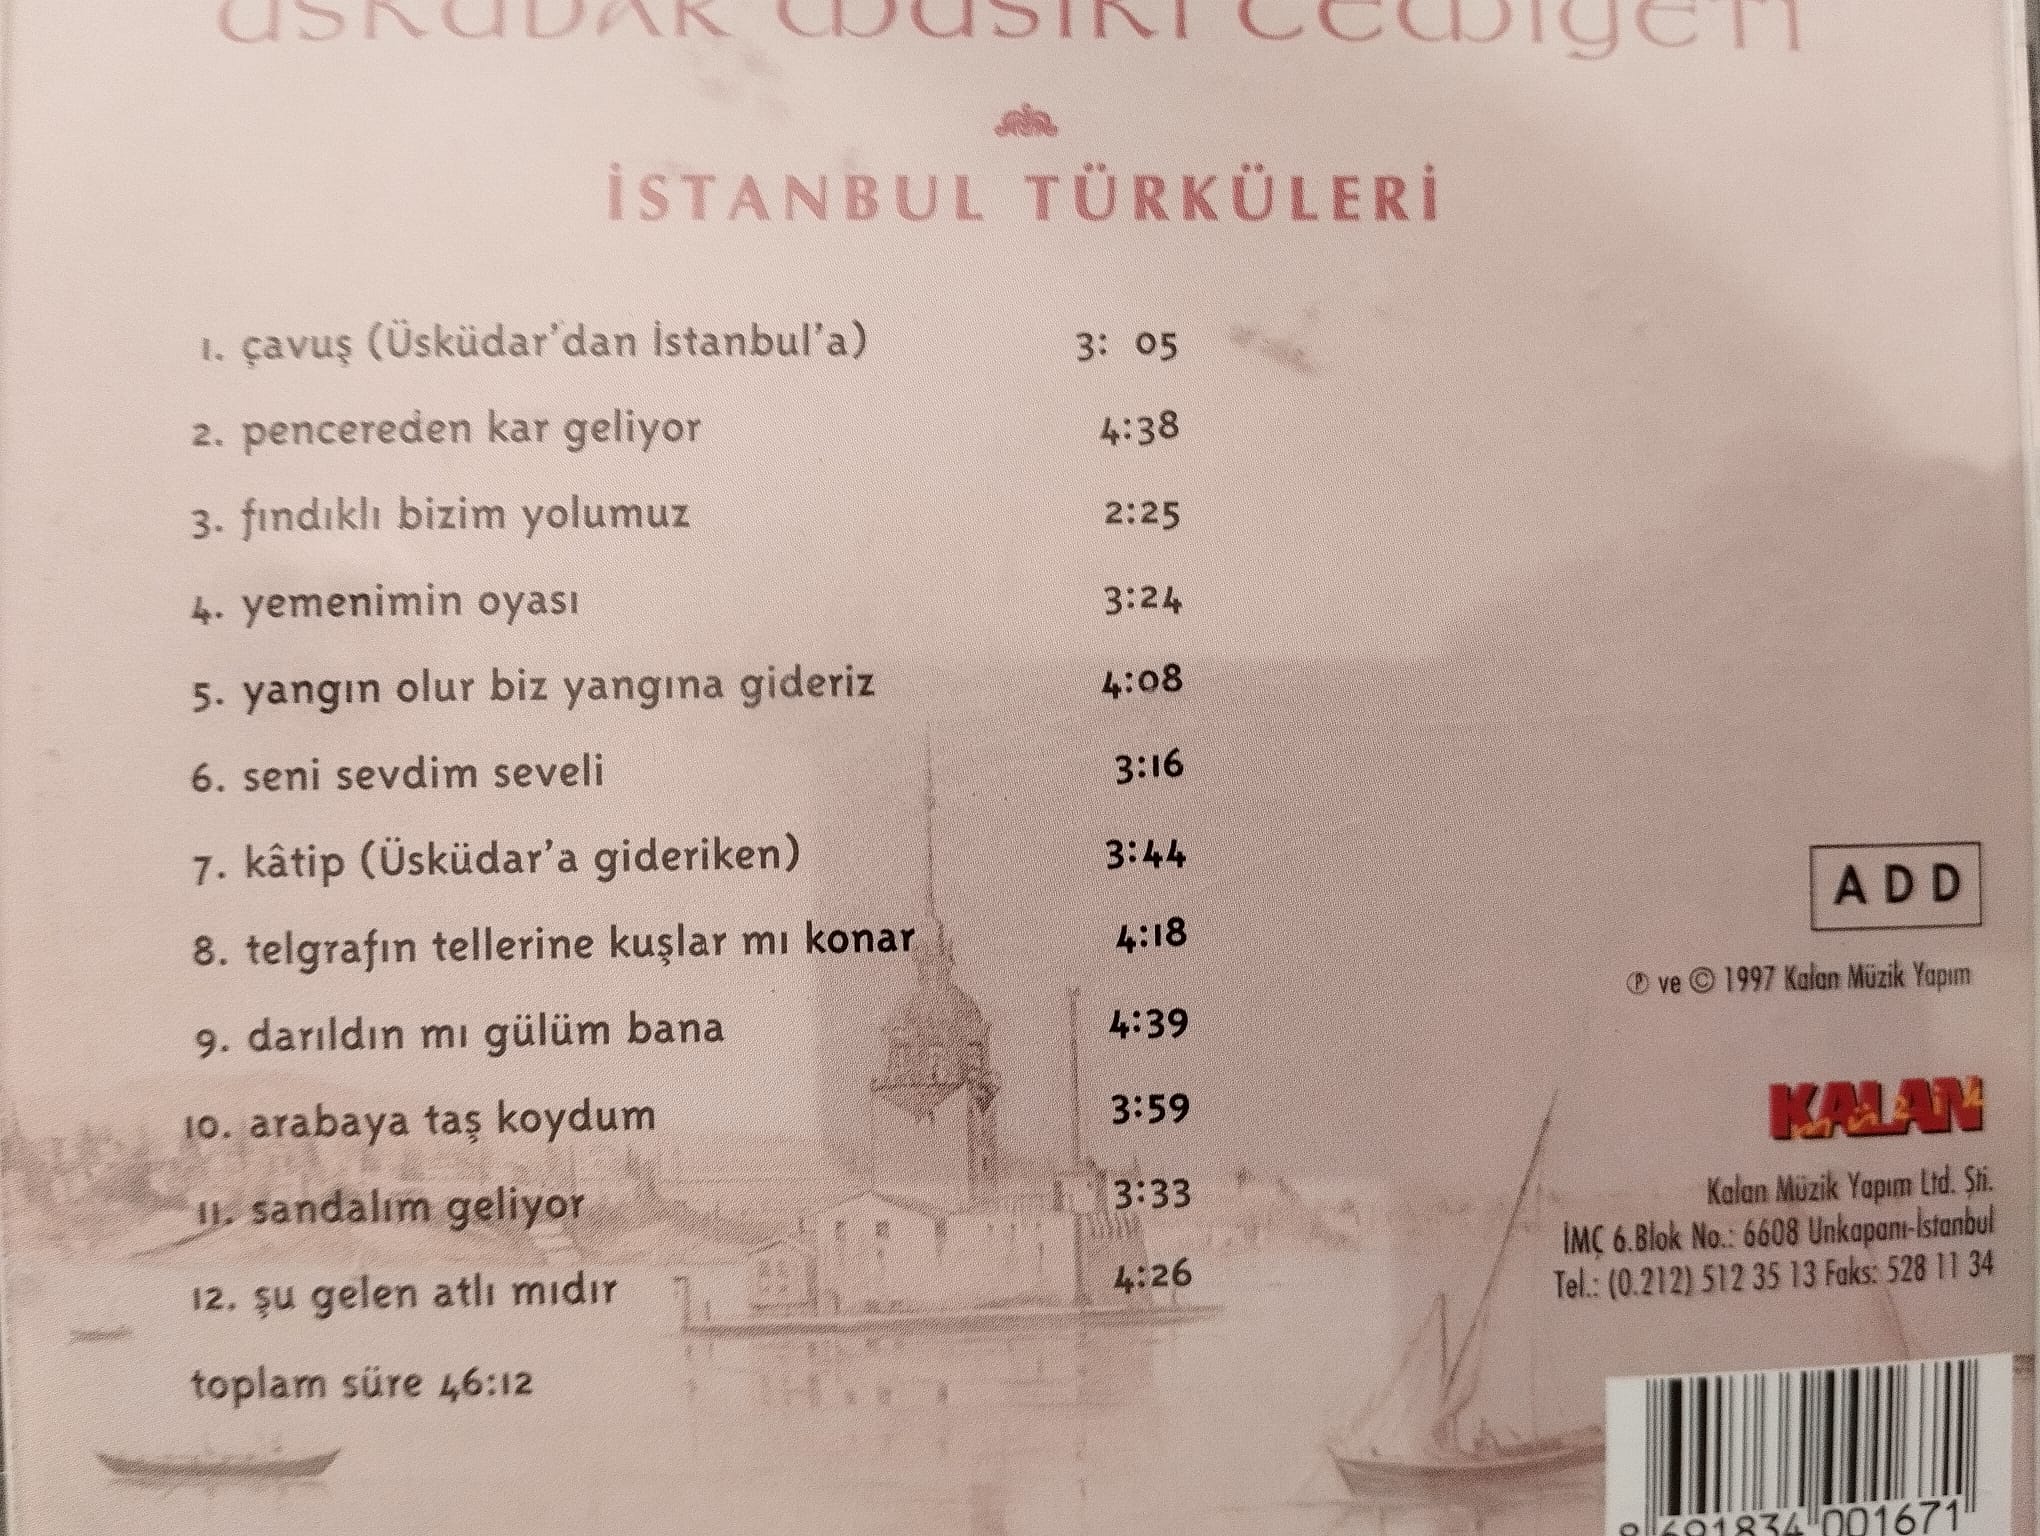 İstanbul Türküleri - Üsküdar Musiki Cemiyeti - Türkiye Basım 2. El  CD Albüm